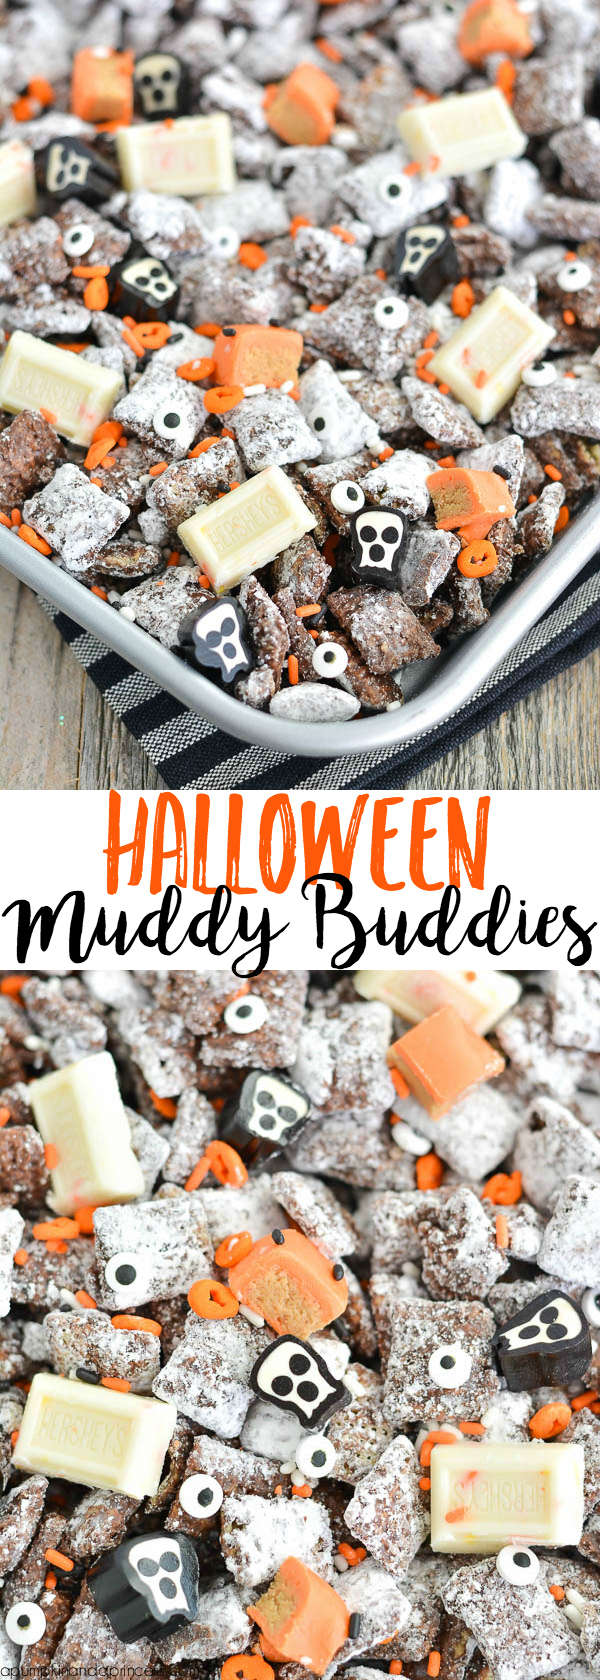 Halloween Muddy Buddies, by A Pumpkin & A Princess